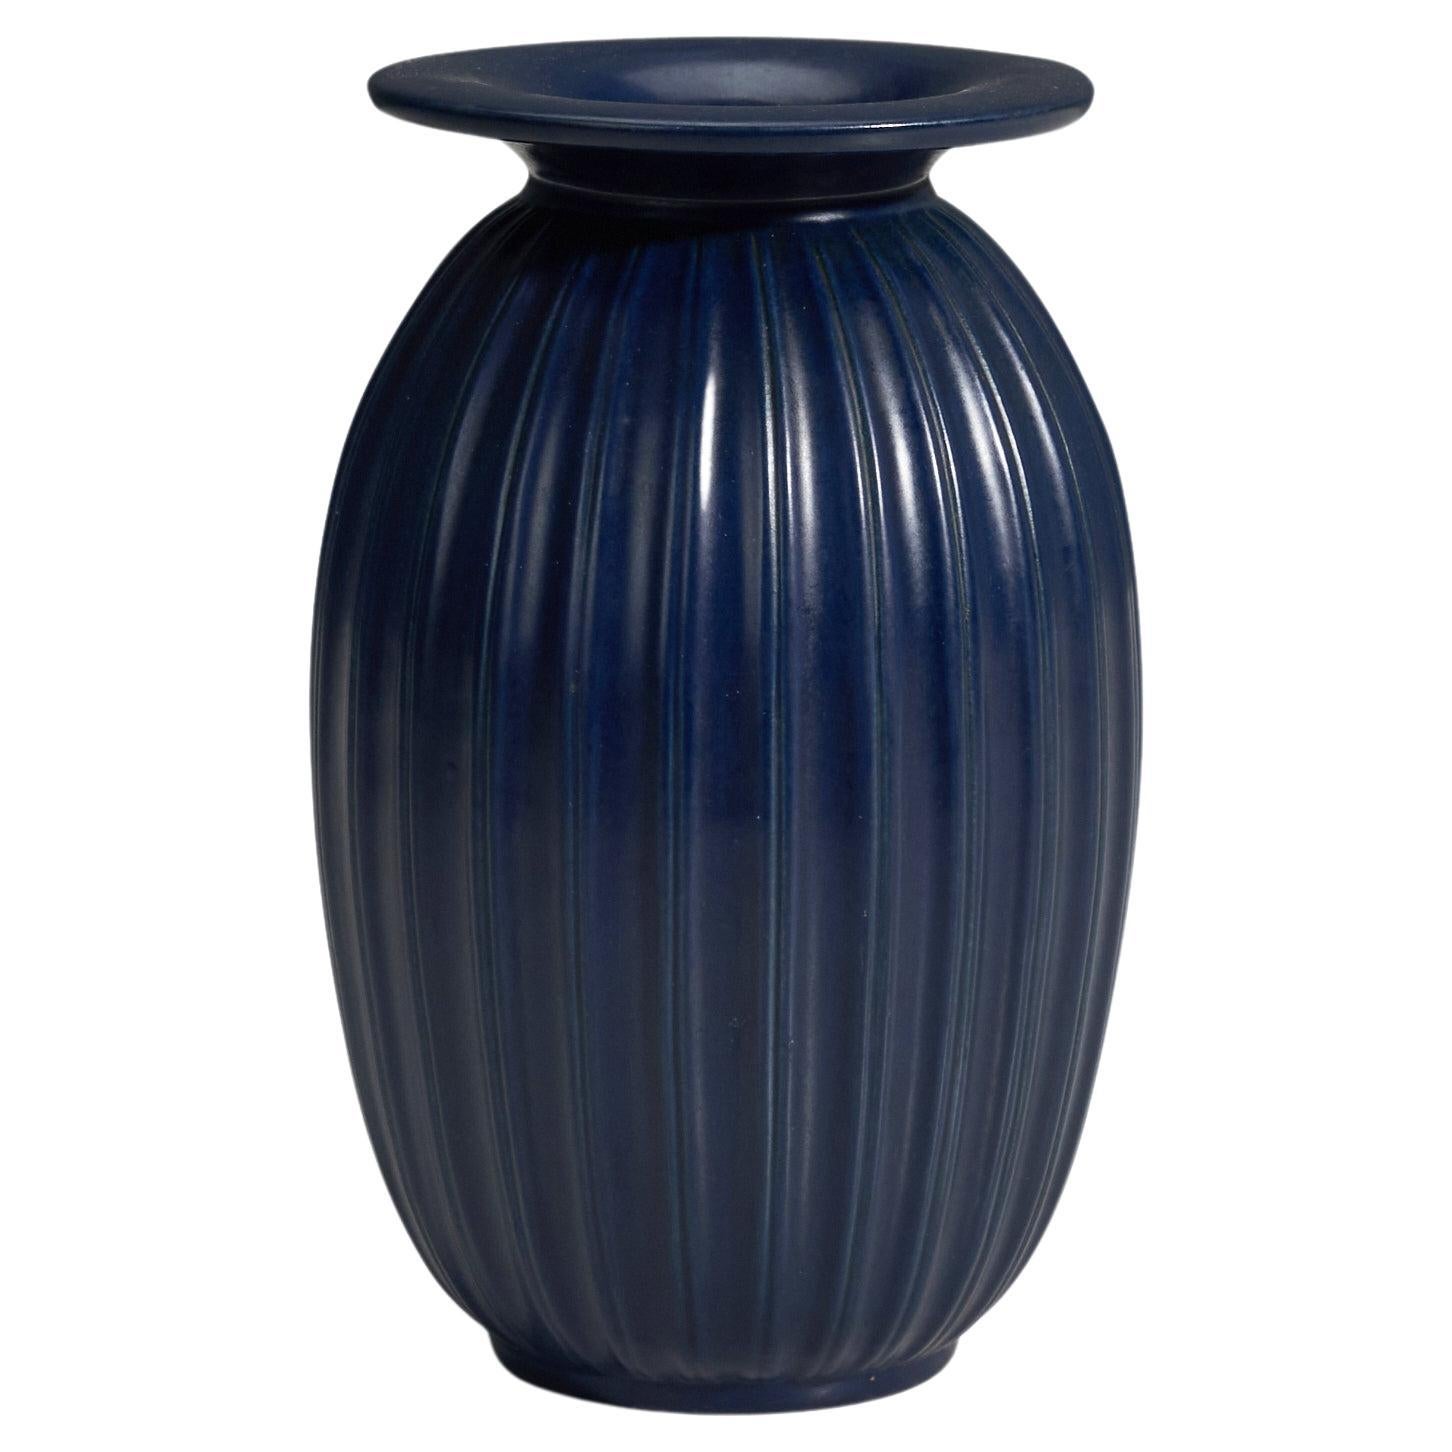 Peter Ipsens Enke, Vase, Blue Glazed Stoneware, Denmark, 1940s